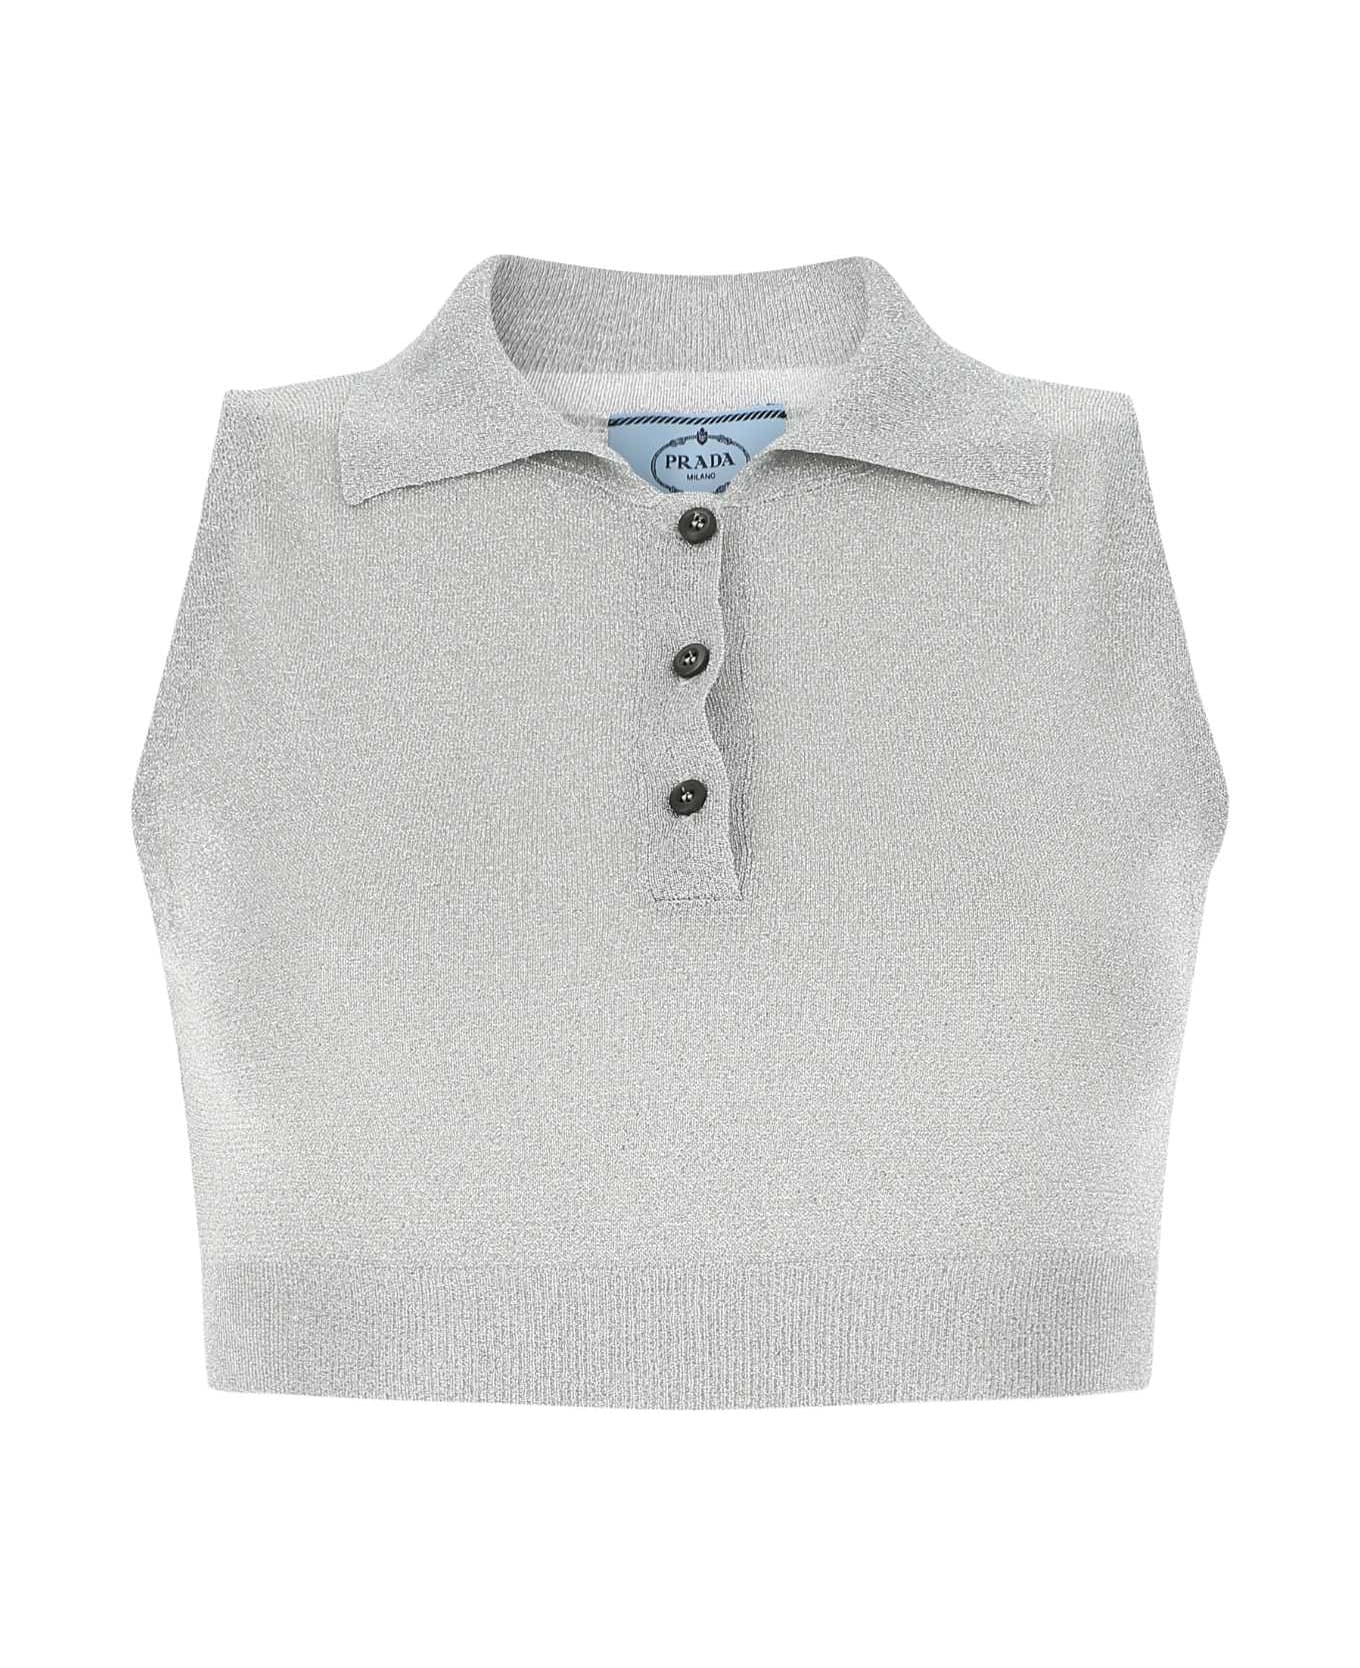 Prada Grey Viscose Blend Top - F0118 ポロシャツ